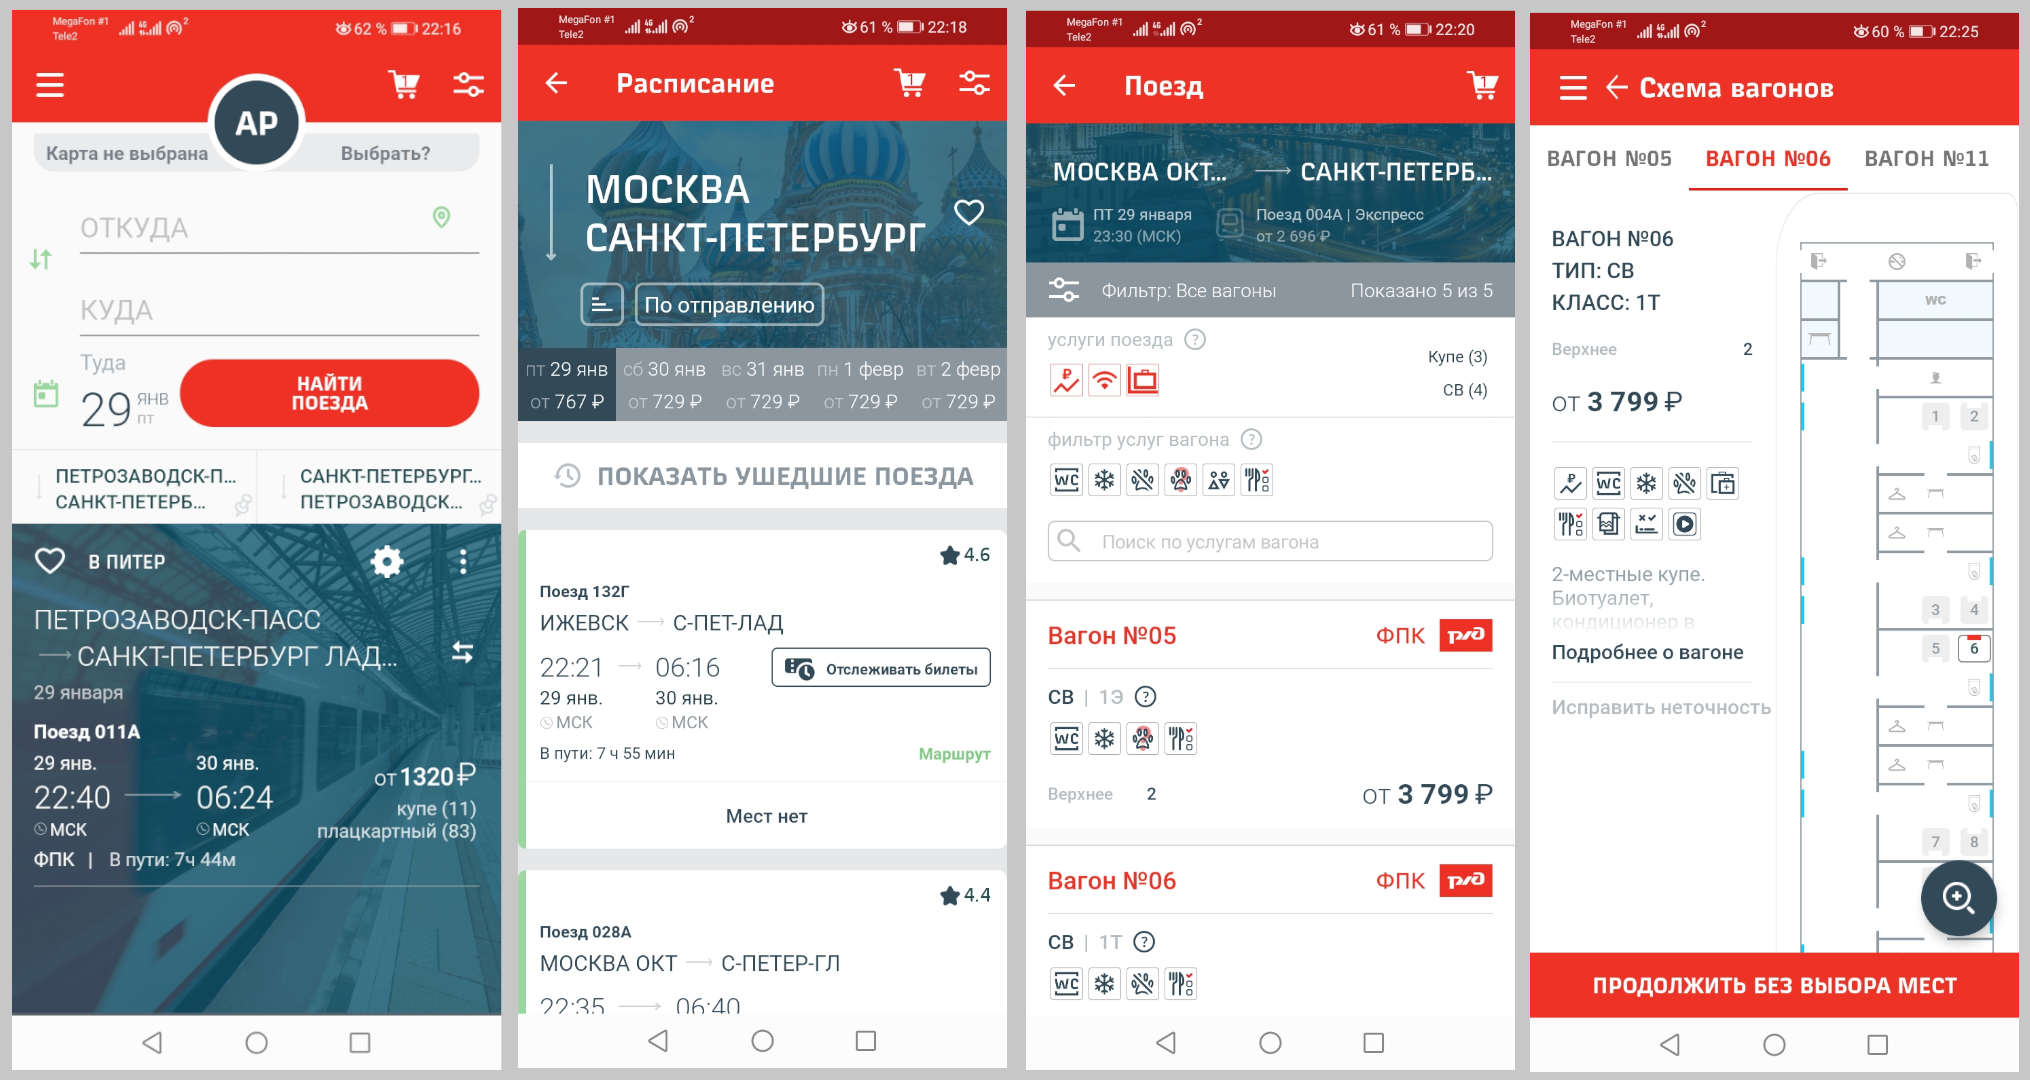 Скриншоты приложения РЖД, личный кабинет, покупка билетов на поезд.